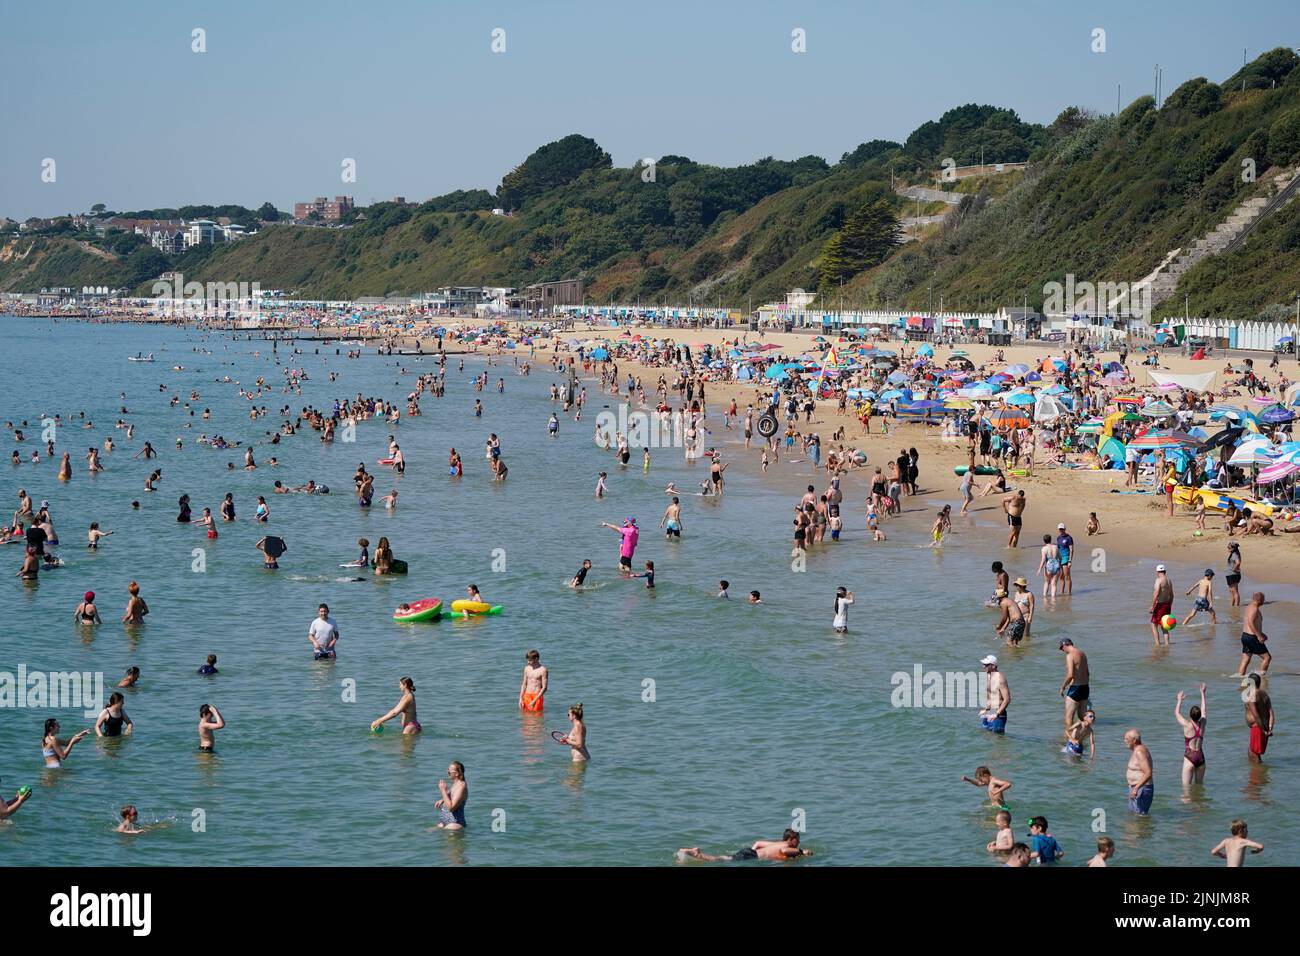 La gente disfruta del calor en la playa de Bournemouth, Dorset. Está previsto que se declare una sequía en algunas partes de Inglaterra el viernes, con temperaturas que alcanzarán los 35C grados, lo que hace que el país sea más caliente que algunas partes del Caribe. Fecha de la foto: Viernes 12 de agosto de 2022. Foto de stock